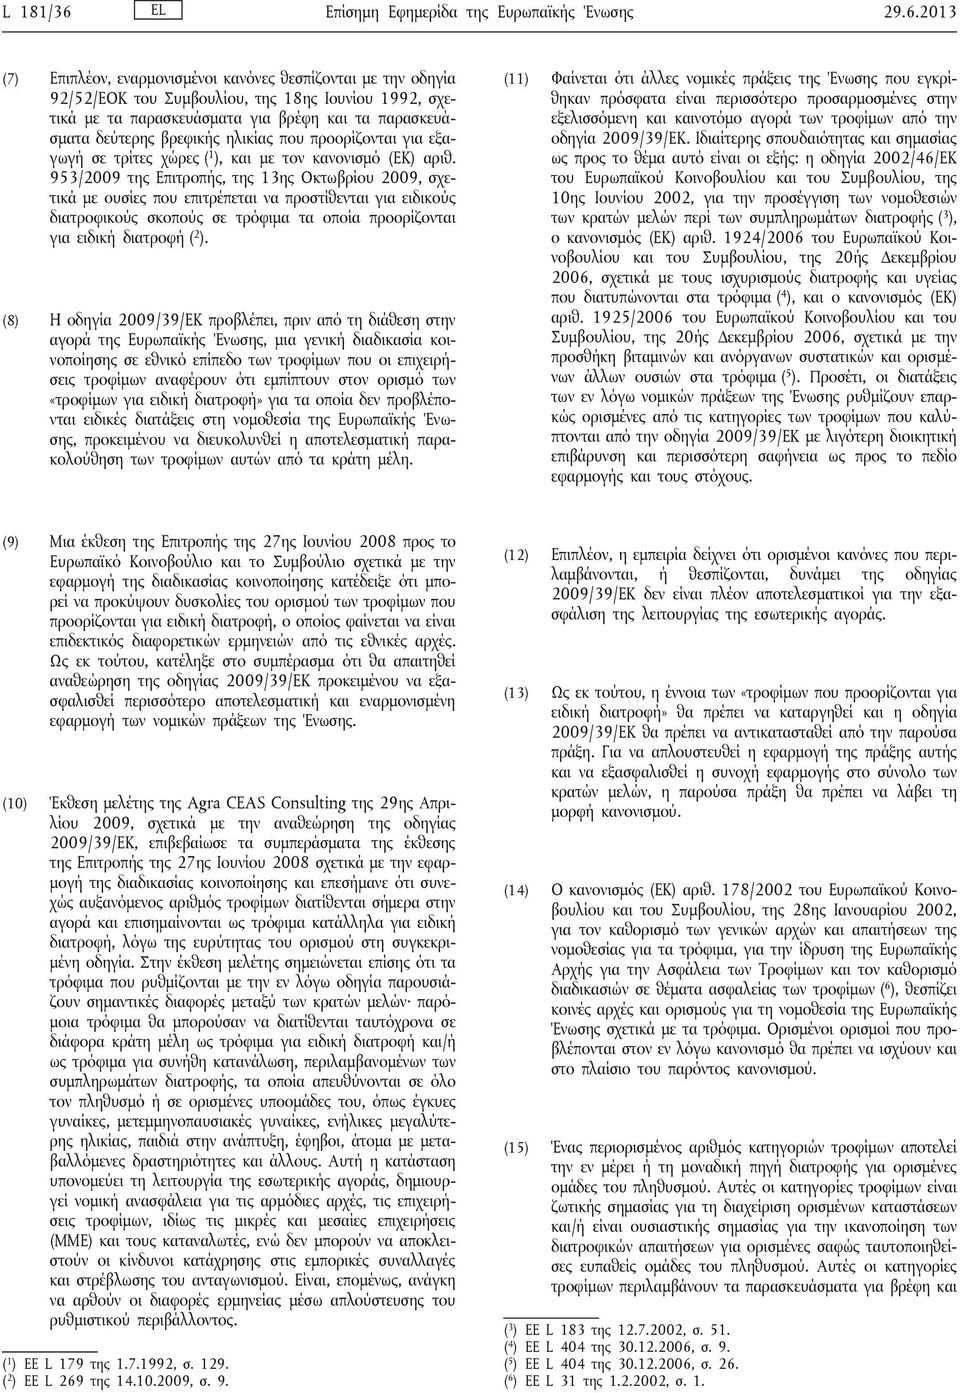 2013 (7) Επιπλέον, εναρμονισμένοι κανόνες θεσπίζονται με την οδηγία 92/52/ΕΟΚ του Συμβουλίου, 18ης Ιουνίου 1992, σχετικά με τα παρασκευάσματα για βρέφη και τα παρασκευάσματα δεύτερης βρεφικής ηλικίας